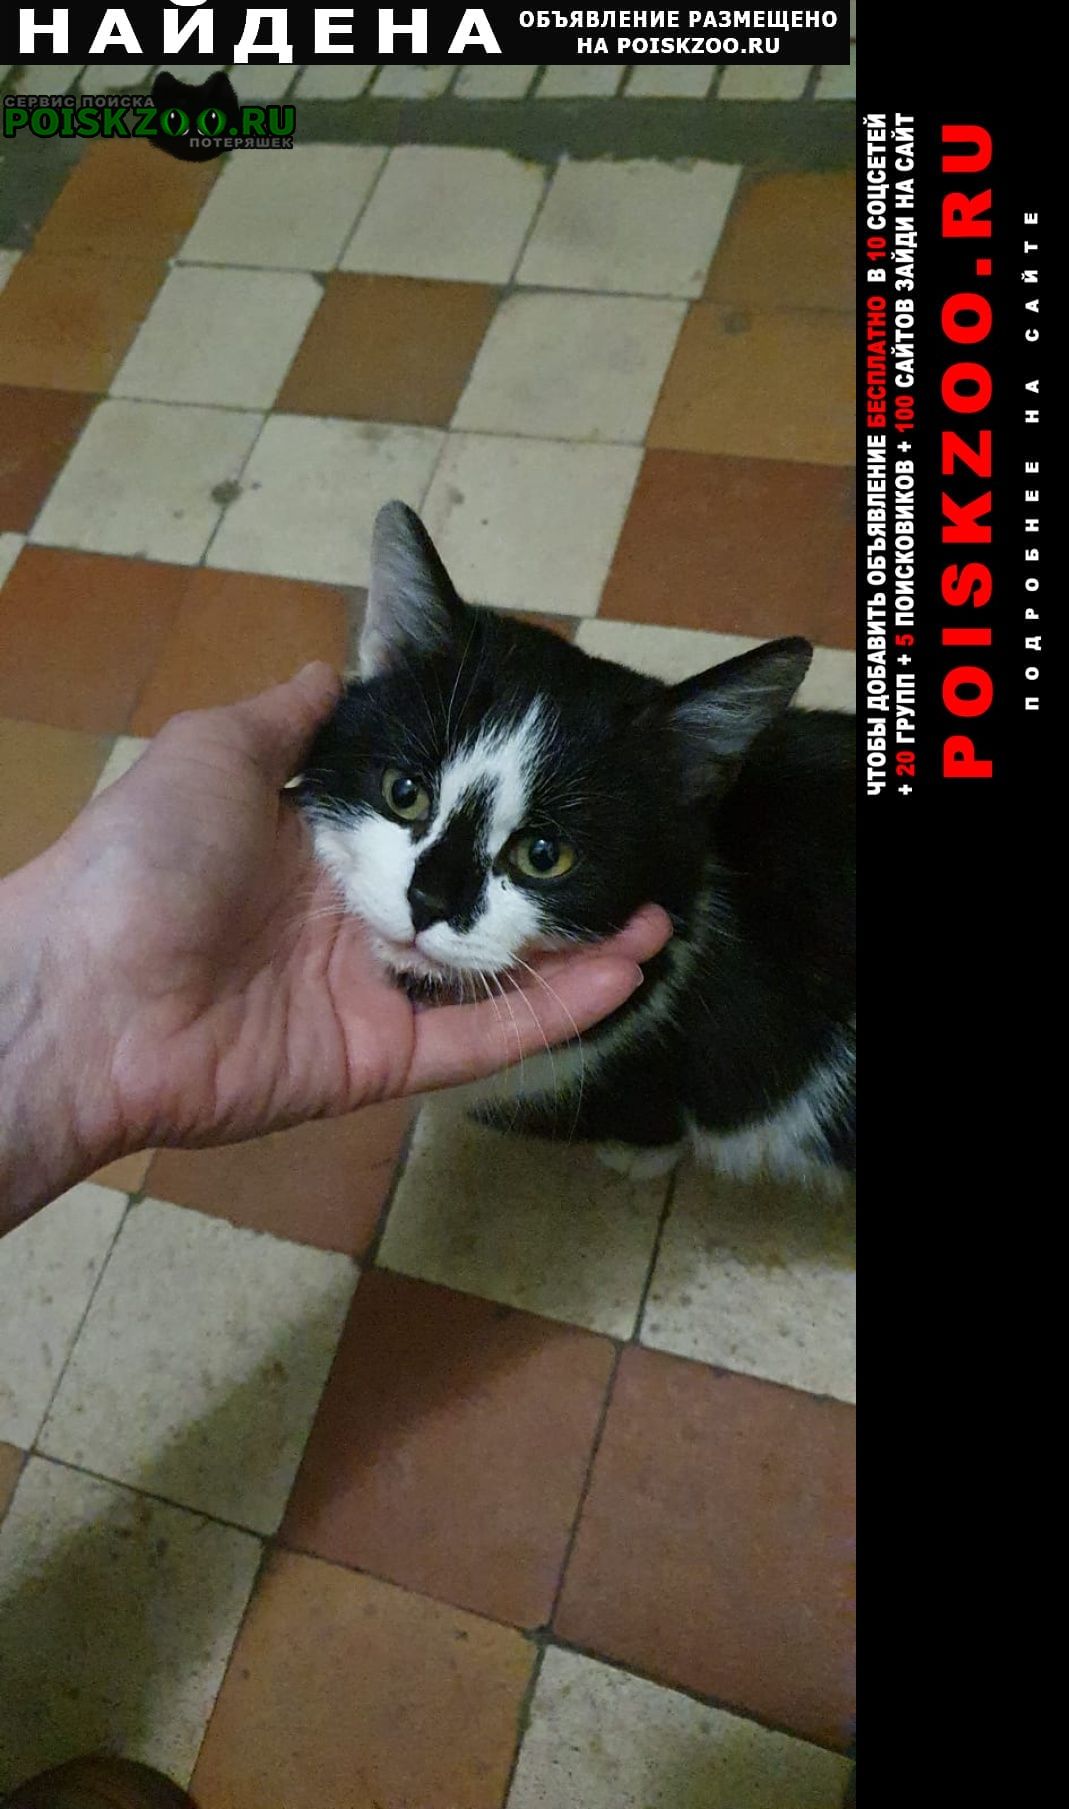 Железнодорожный (Московск.) Найдена кошка чёрно-белая